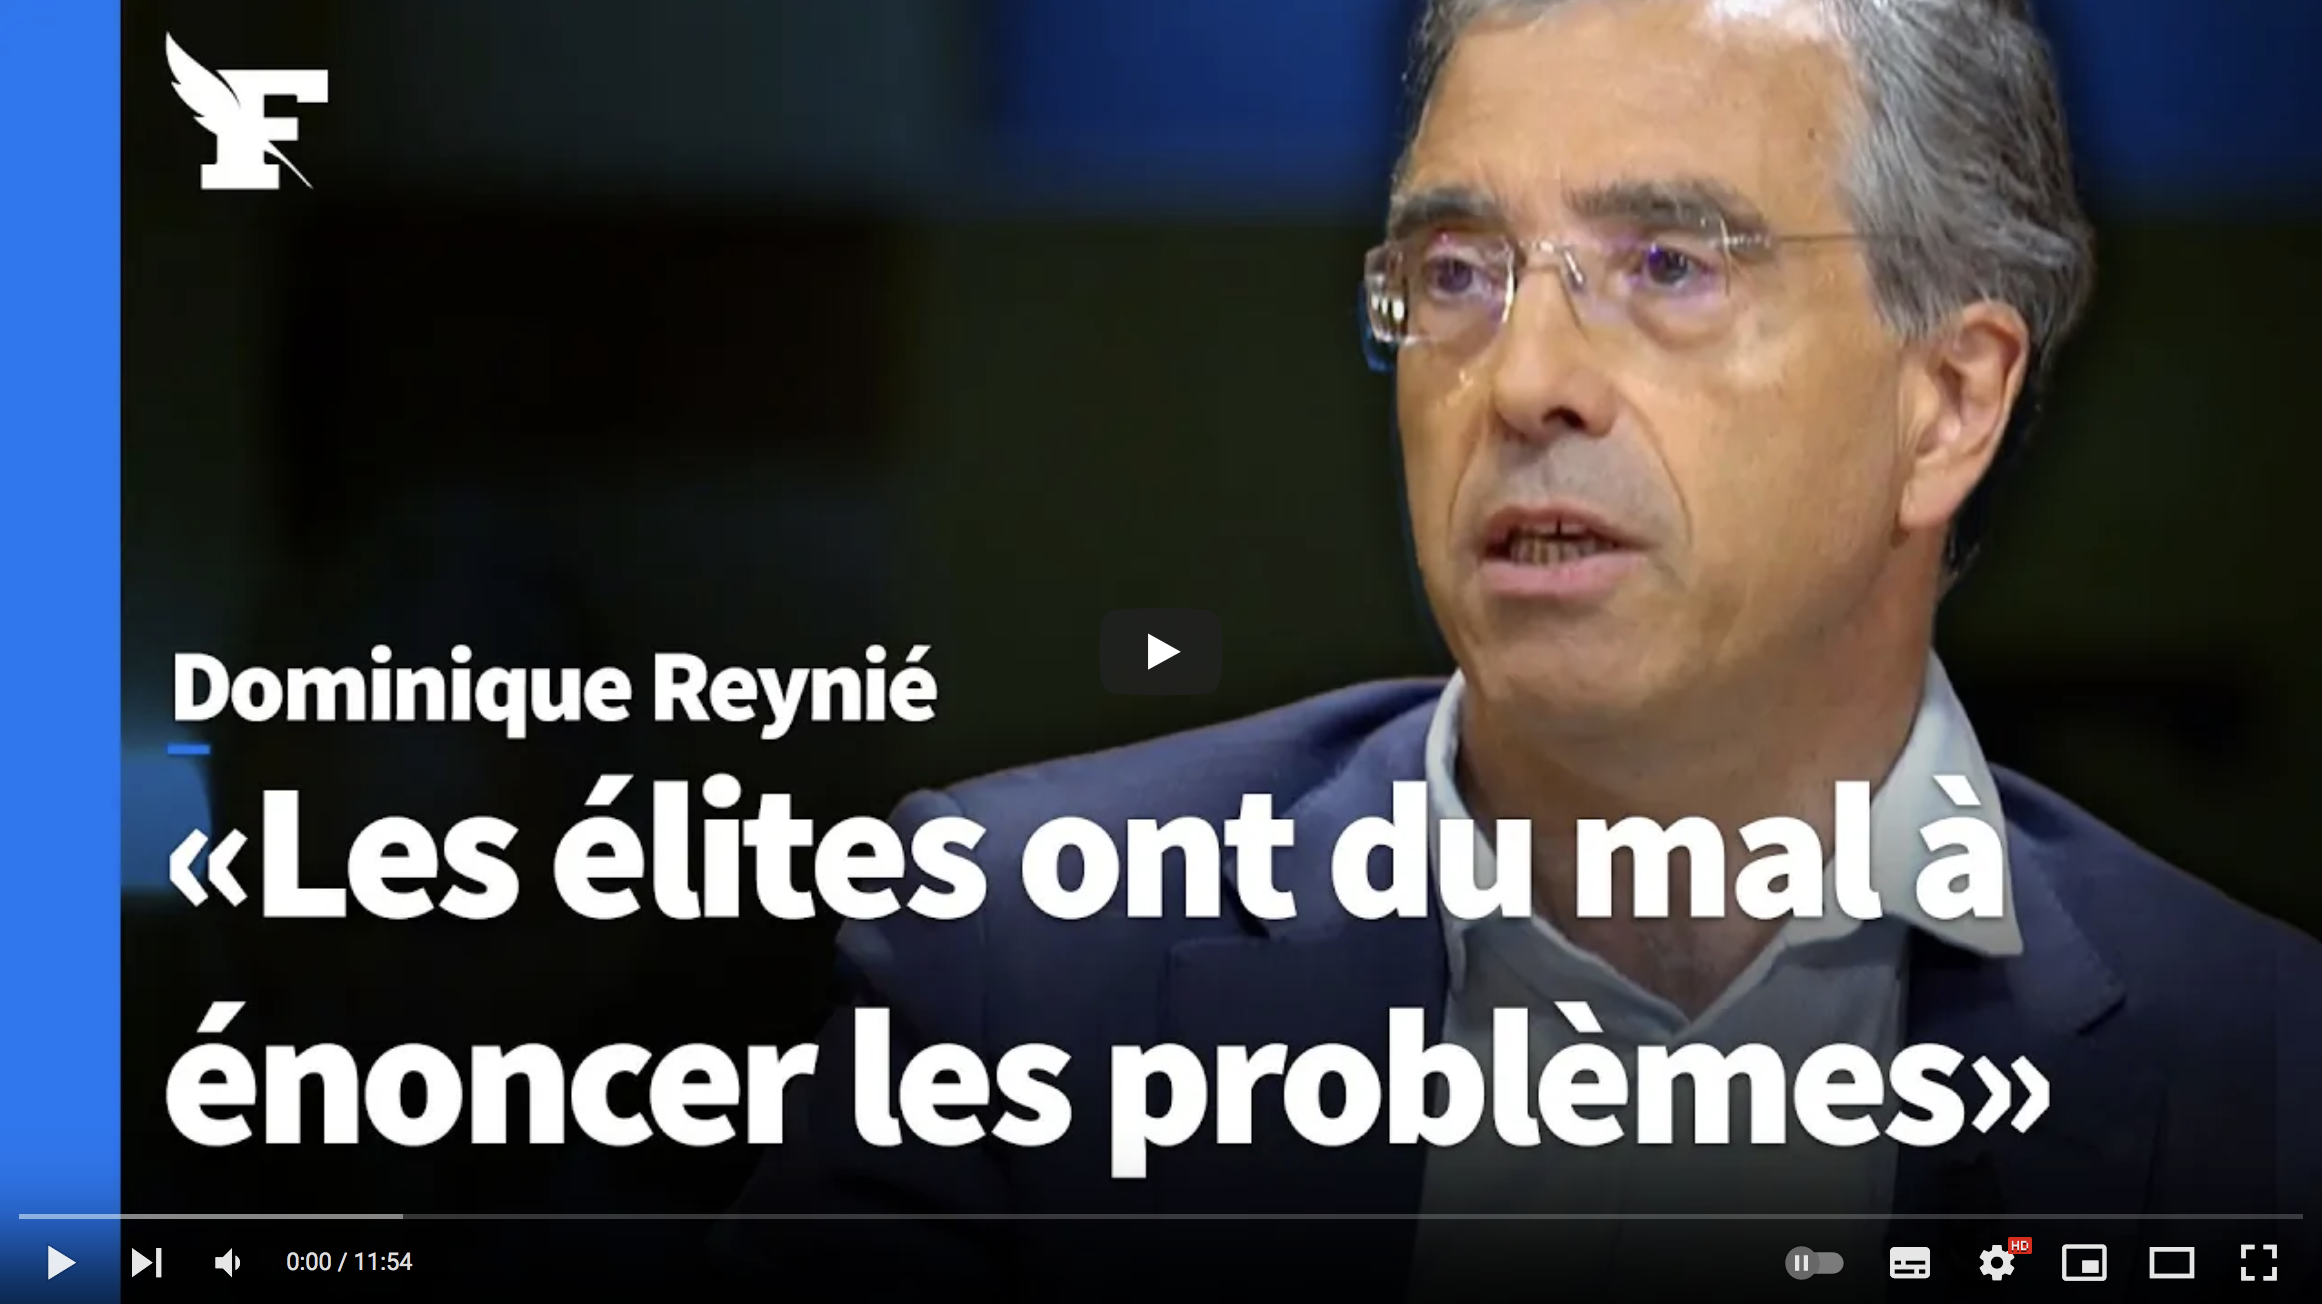 Dominique Reynié : “Les élites ont du mal à énoncer les problèmes” (VIDÉO)